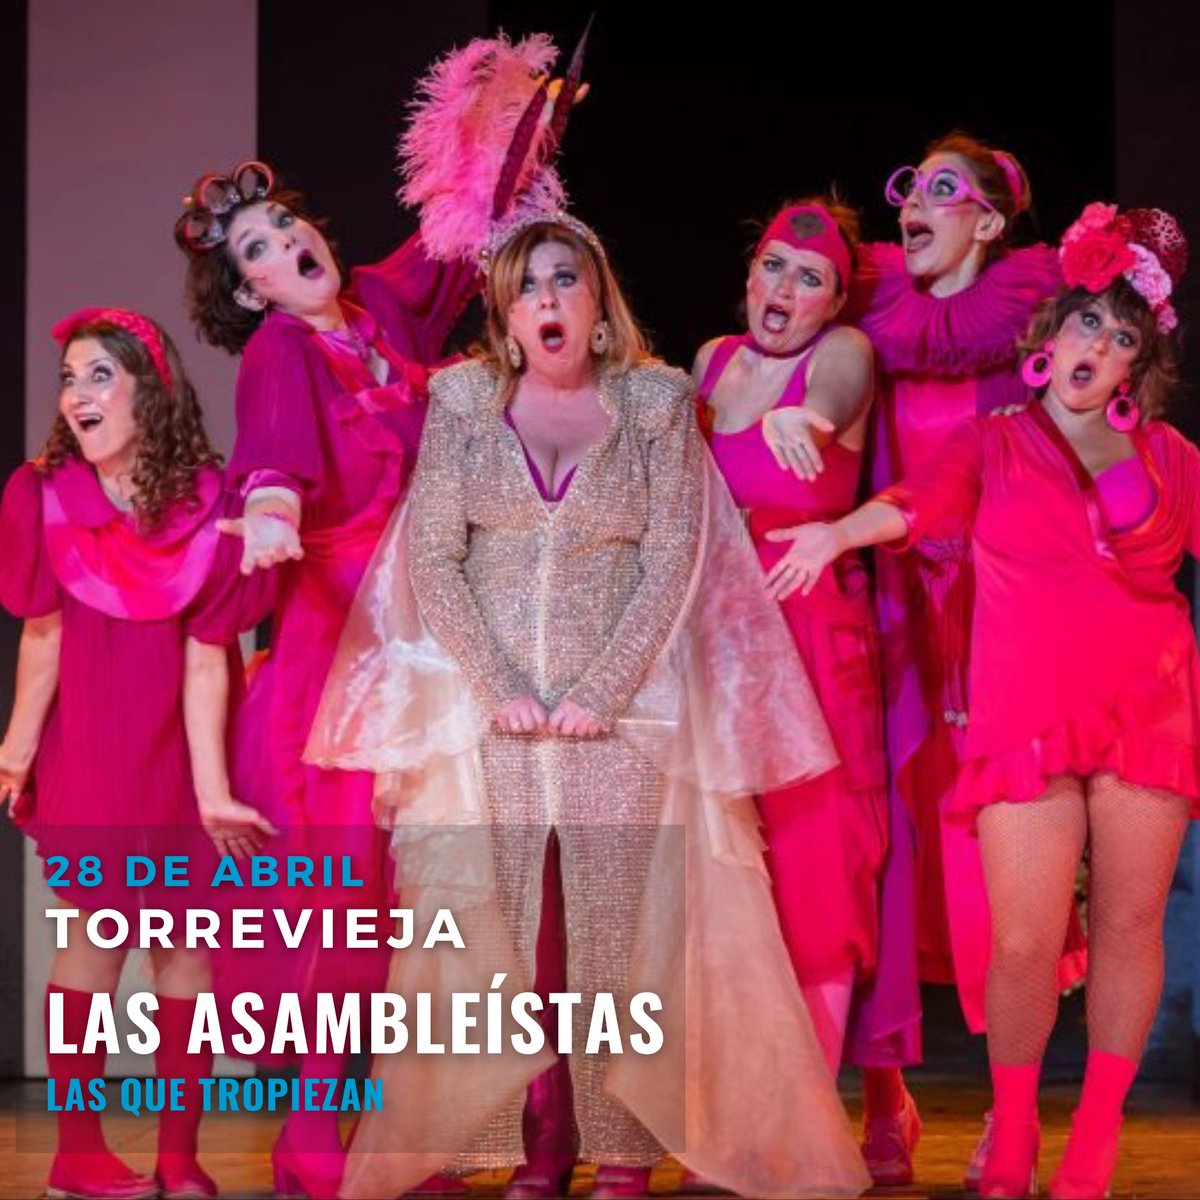 El 28 de abril 🗓️, #LasAsambleístas llegan al Auditorio de #Torrevieja 📍

¡Os esperamos en el teatro! 🎭

@JCimarro @ElTerratTeatro @ElTerrat